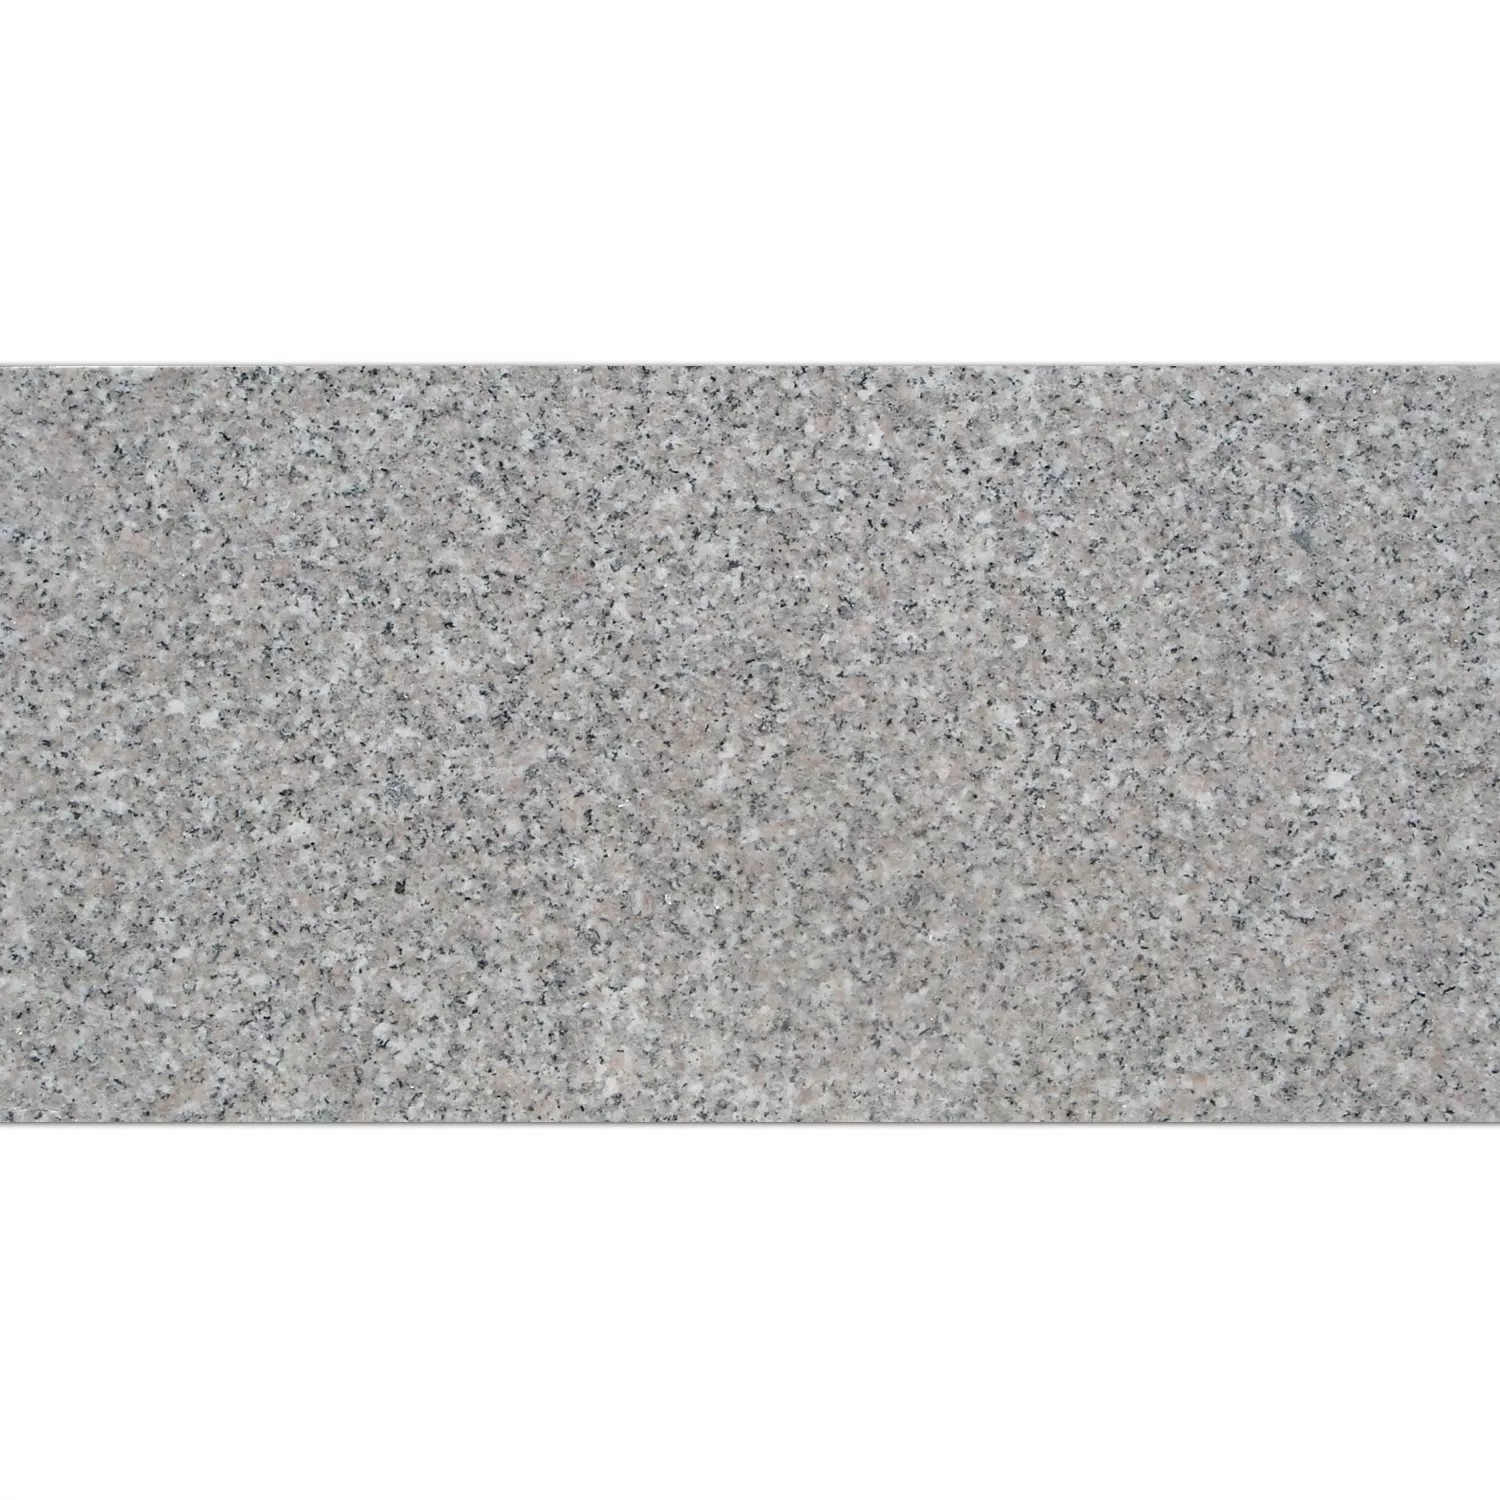 Placi De Piatra Naturala Granit Roz Classico Lustruit 30,5x61cm